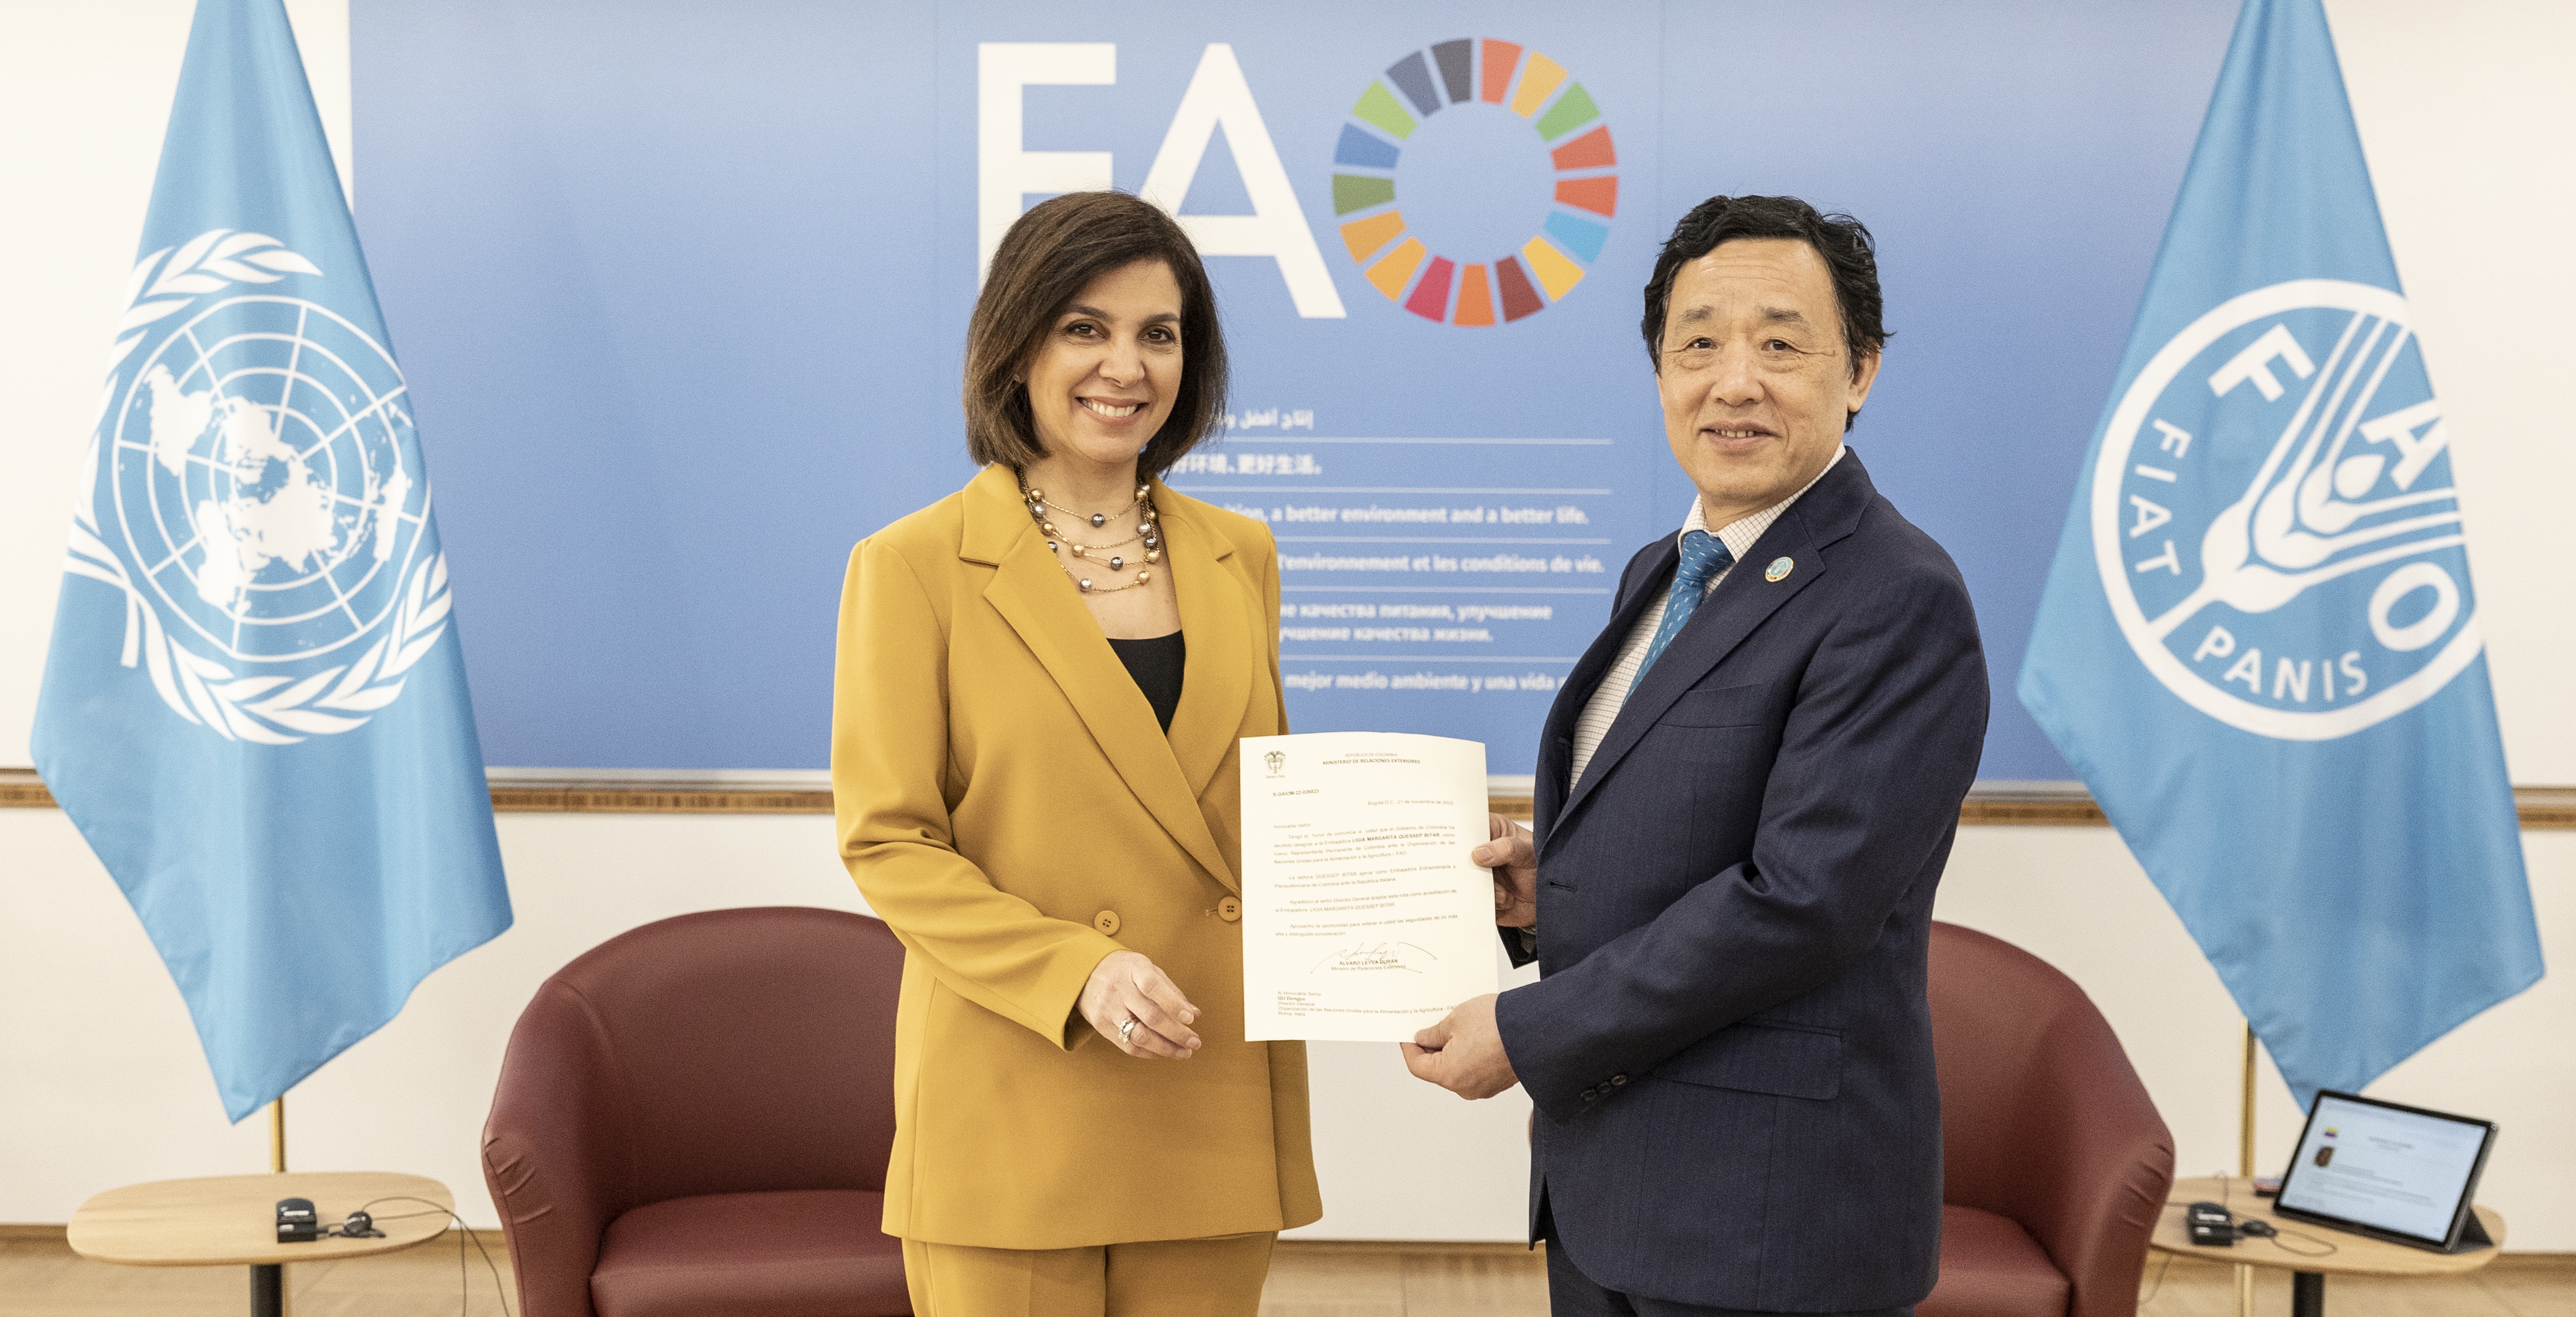 Embajadora de Colombia ante la República Italiana, Ligia Margarita Quessep Bitar, presentó su acreditación como Representante Permanente ante la FAO